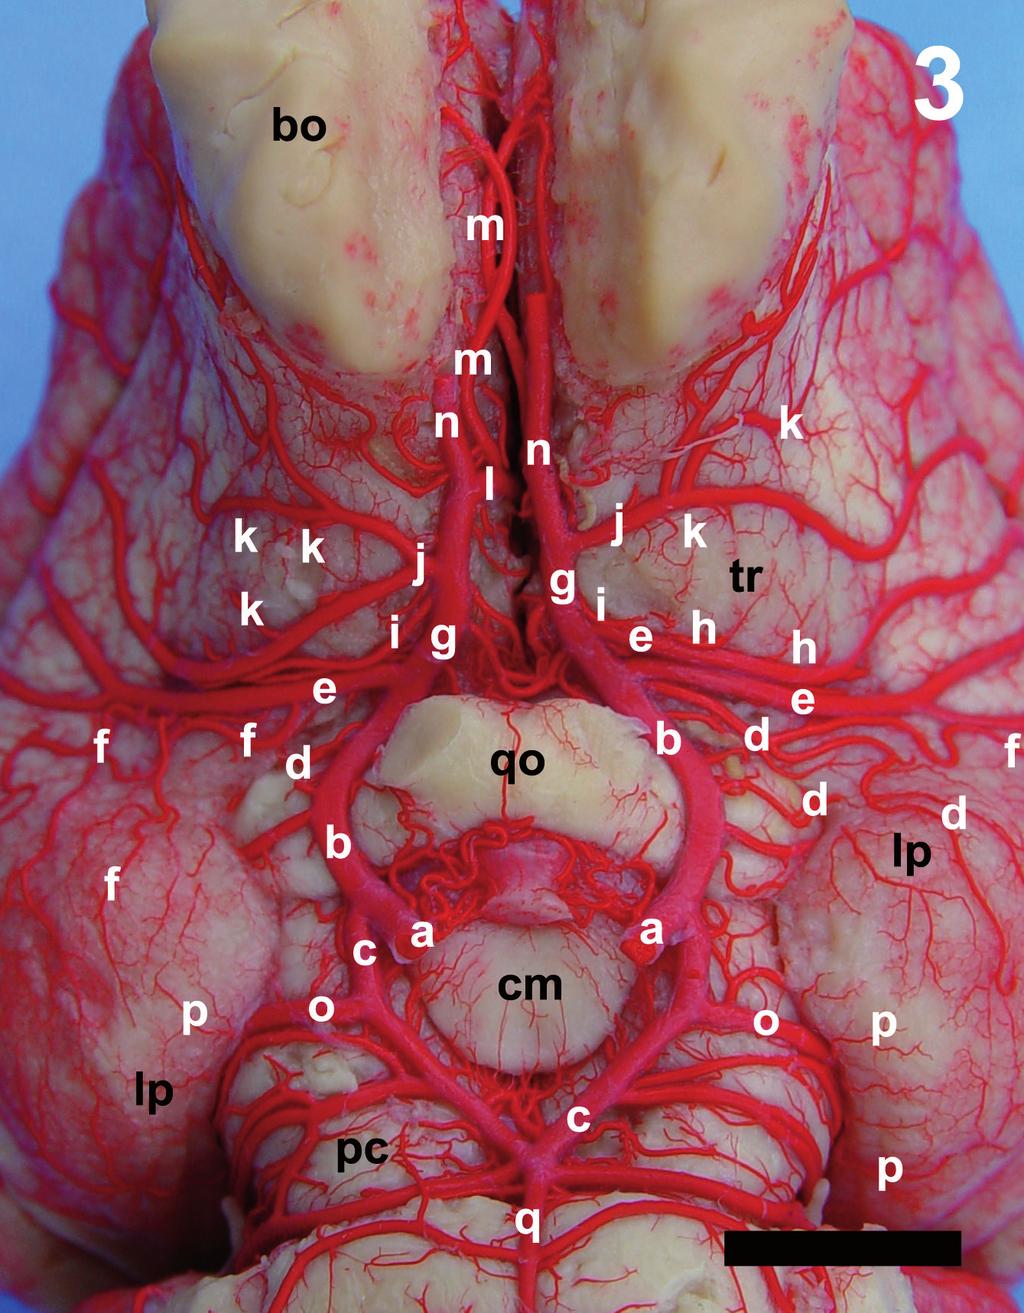 Figura 3. Fotografia em vista ventral (detalhe) da base do hemisfério cerebral salientando os ramos centrais das ramificações das artérias cerebrais, (Observação 10).